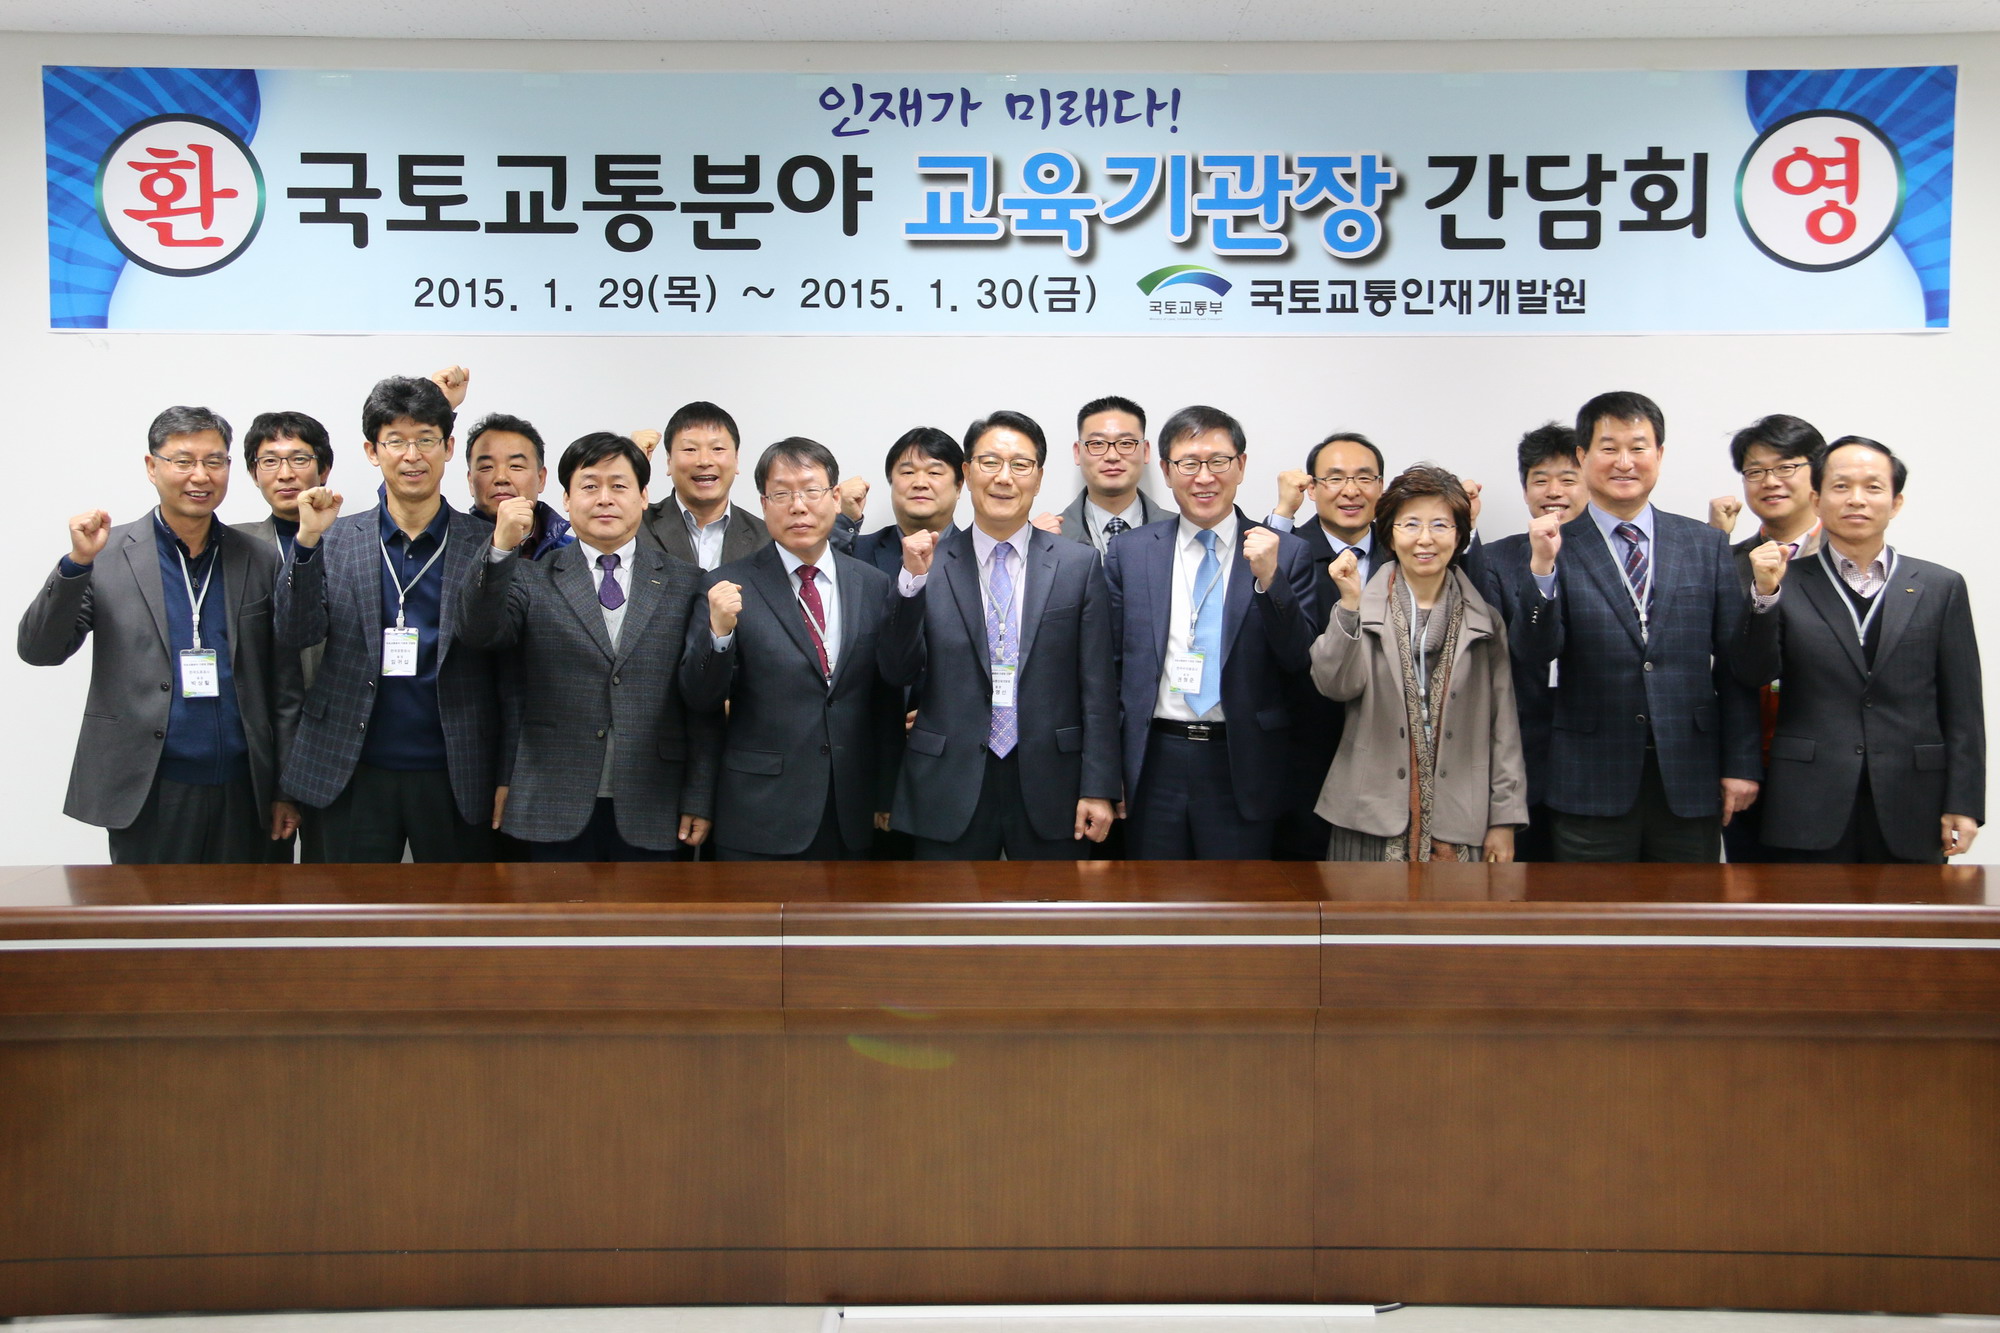 국토교통교육기관 간담회 개최 #2(2015-1-30)